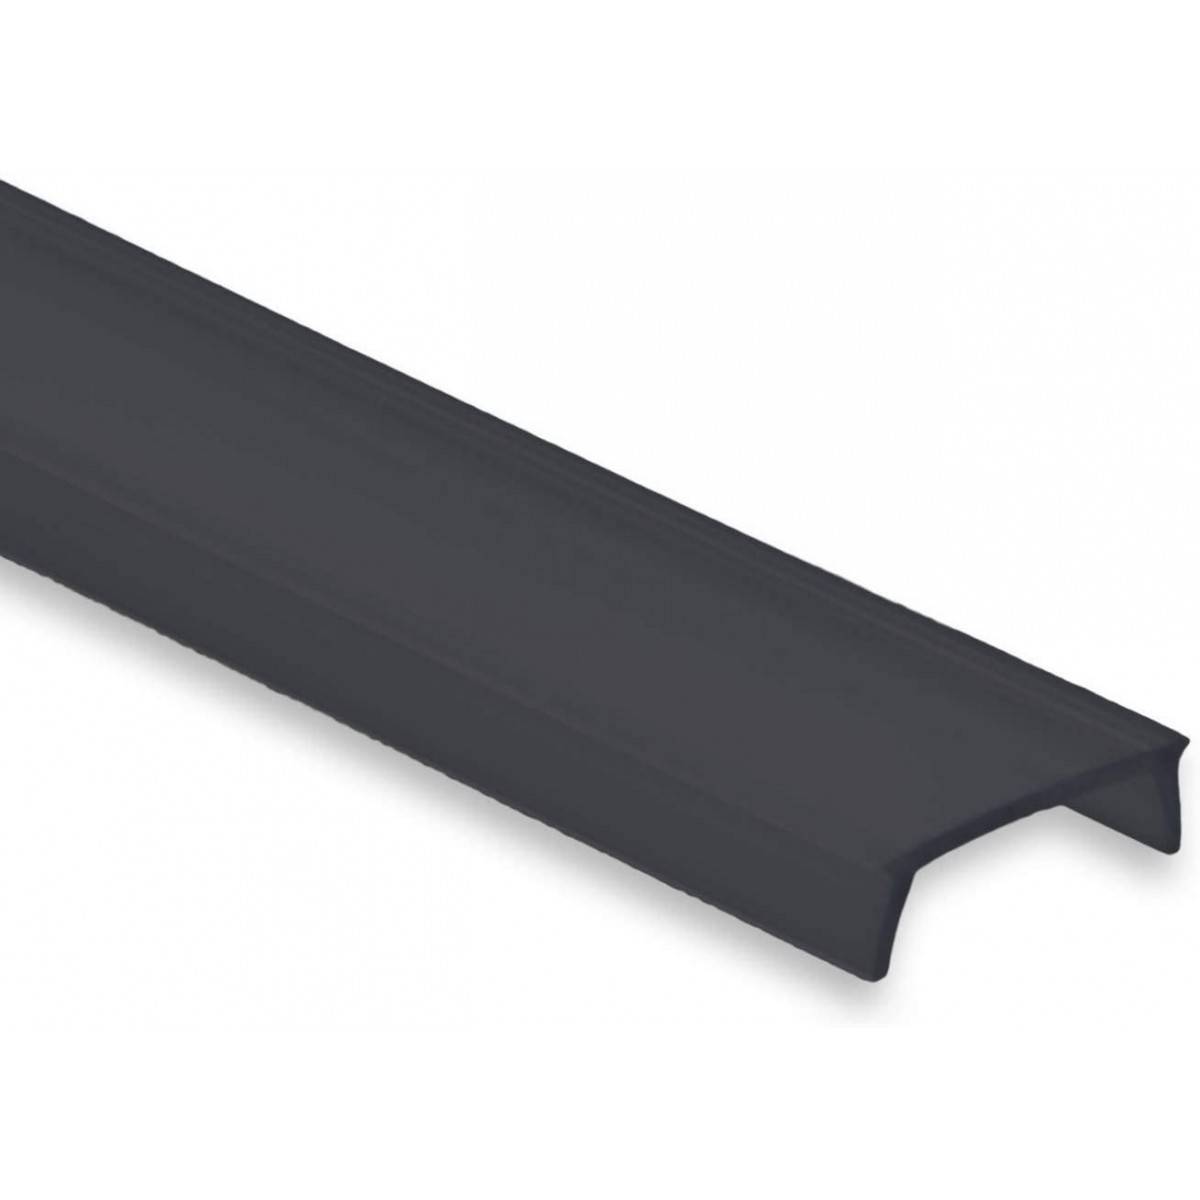 Difusor preto para perfil de fita LED de 17mm (2m)